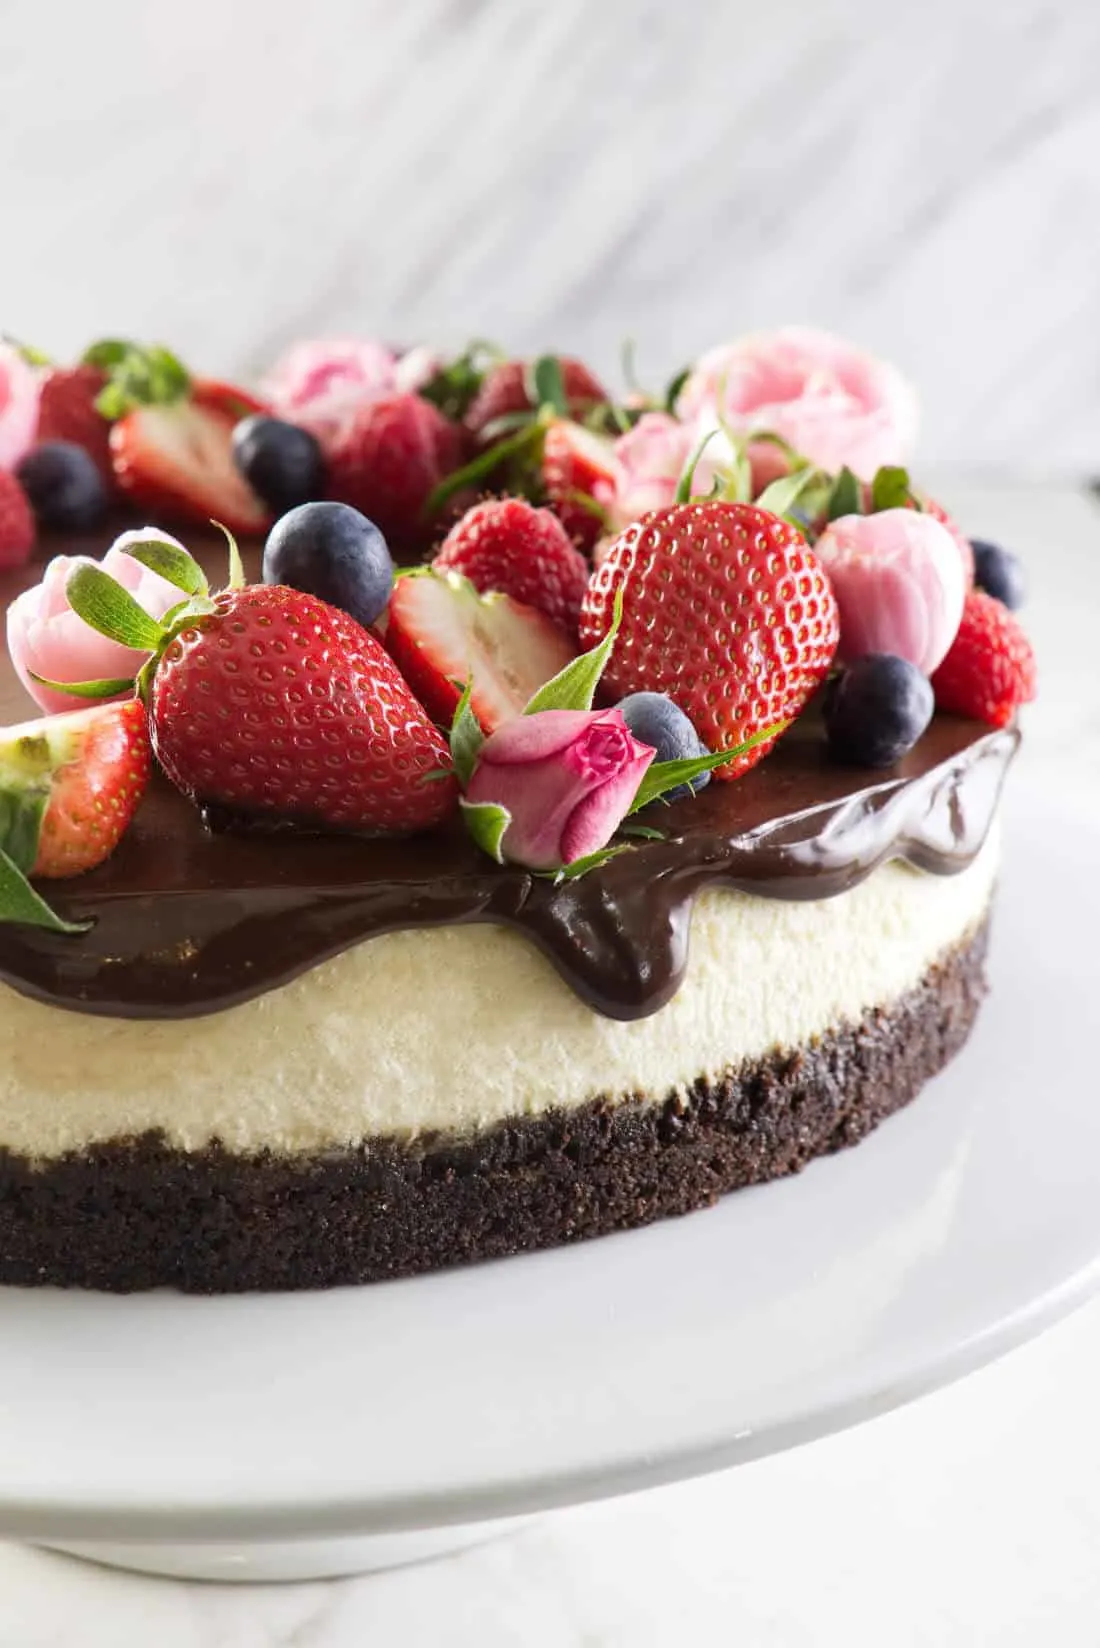 Bourbon vanilla cheesecake with chocolate ganache